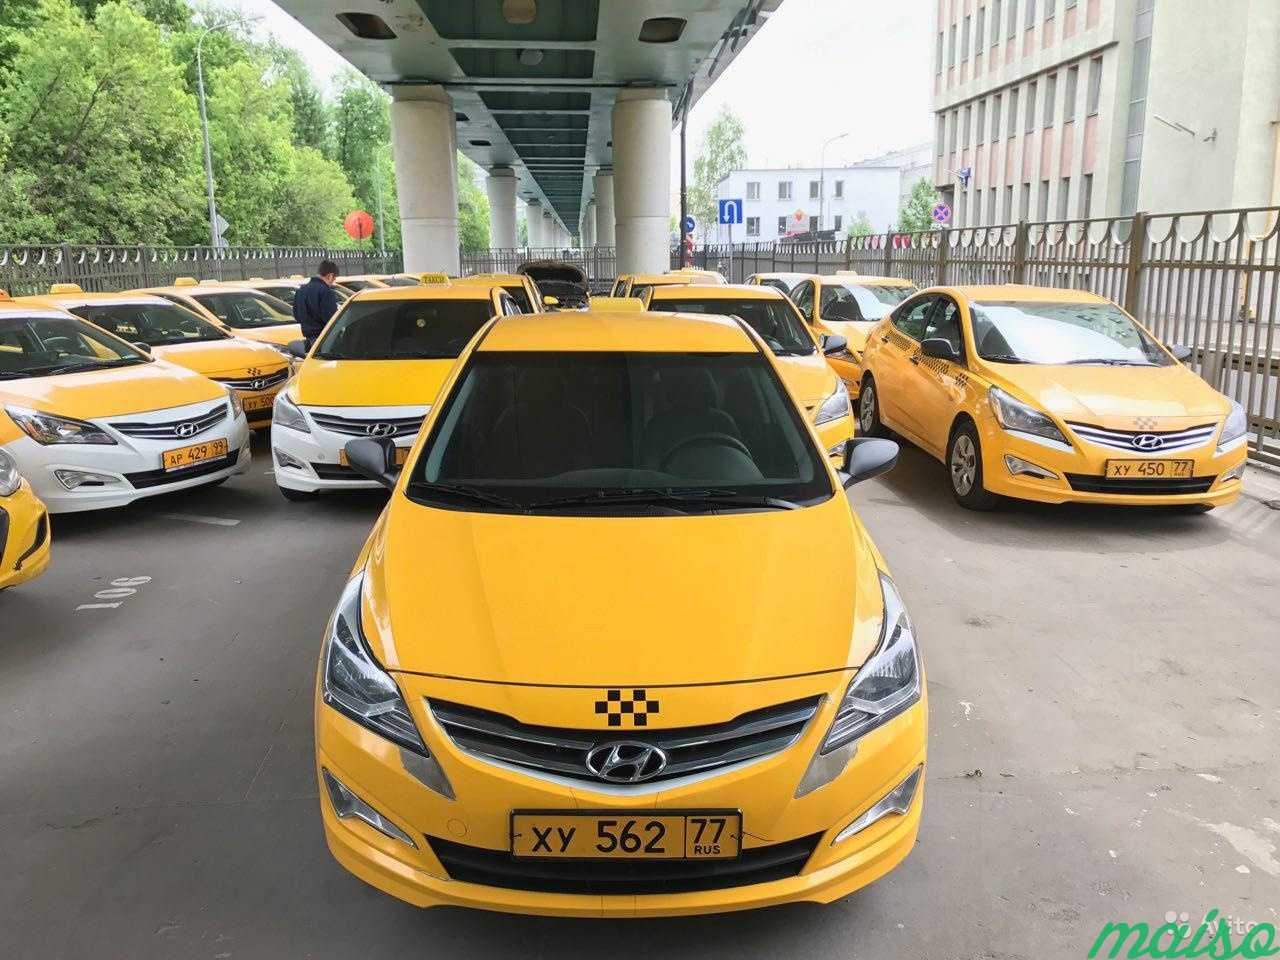 Такси в аренду без залога и депозита. Хендай Соната такси комфорт. Желтое такси Солярис. Хендай Солярис такси. Желтая машина такси.